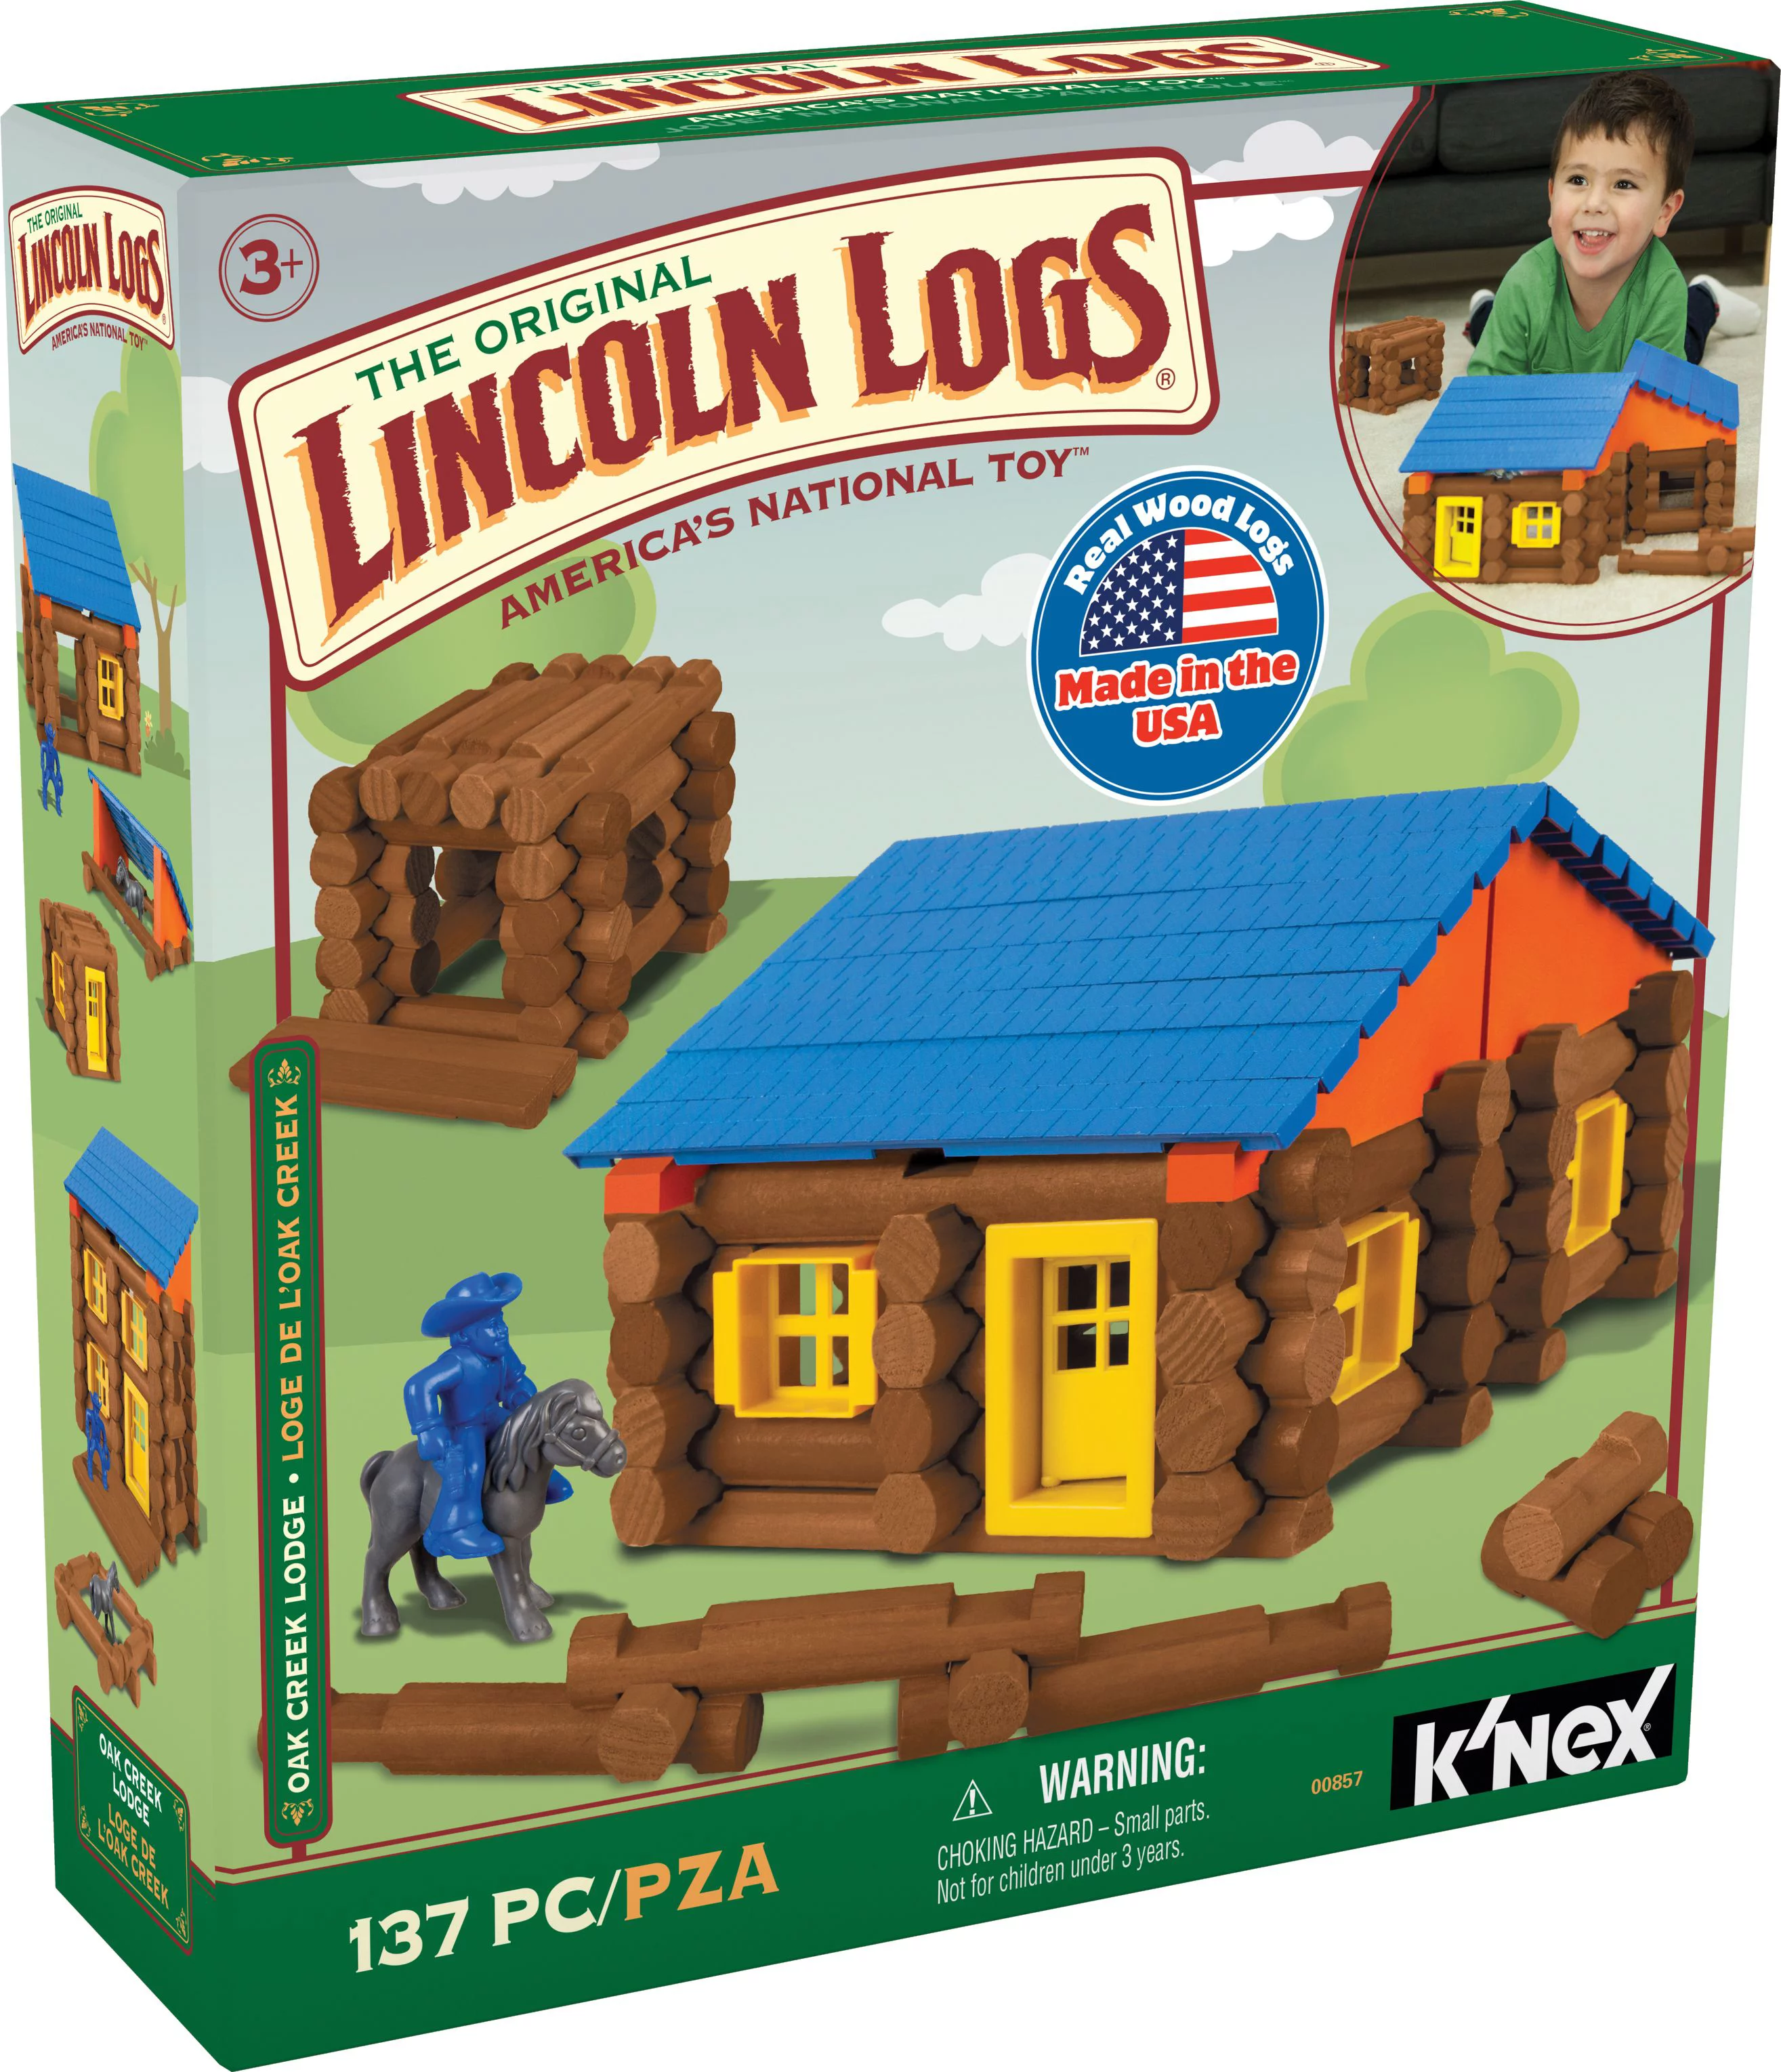 LINCOLN LOGS - Oak Creek Lodge - 137 Pieces - Ages 3 Preschool Education Toy